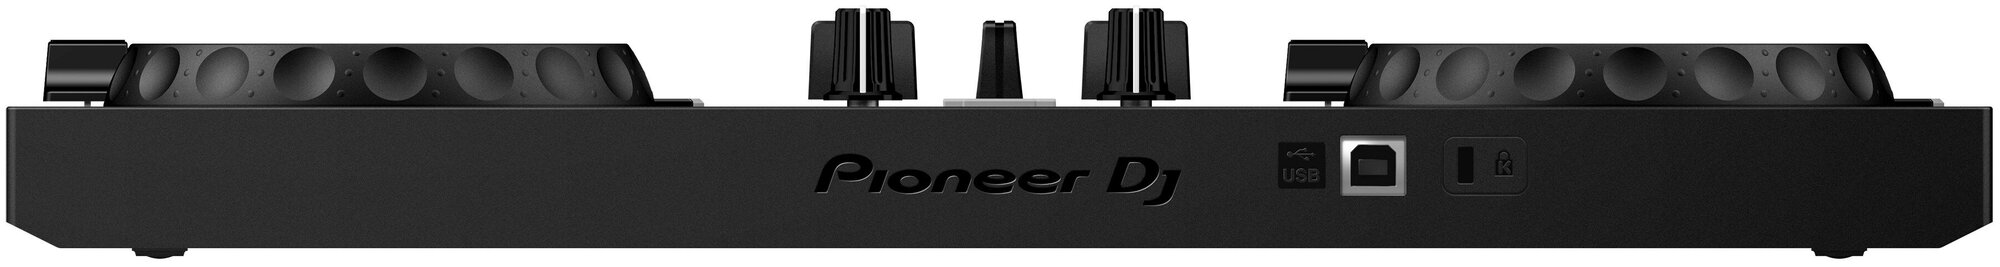 Pioneer DDJ-200 двухканальный контроллер для rekordbox dj, WeDJ, djay, edjing Mix